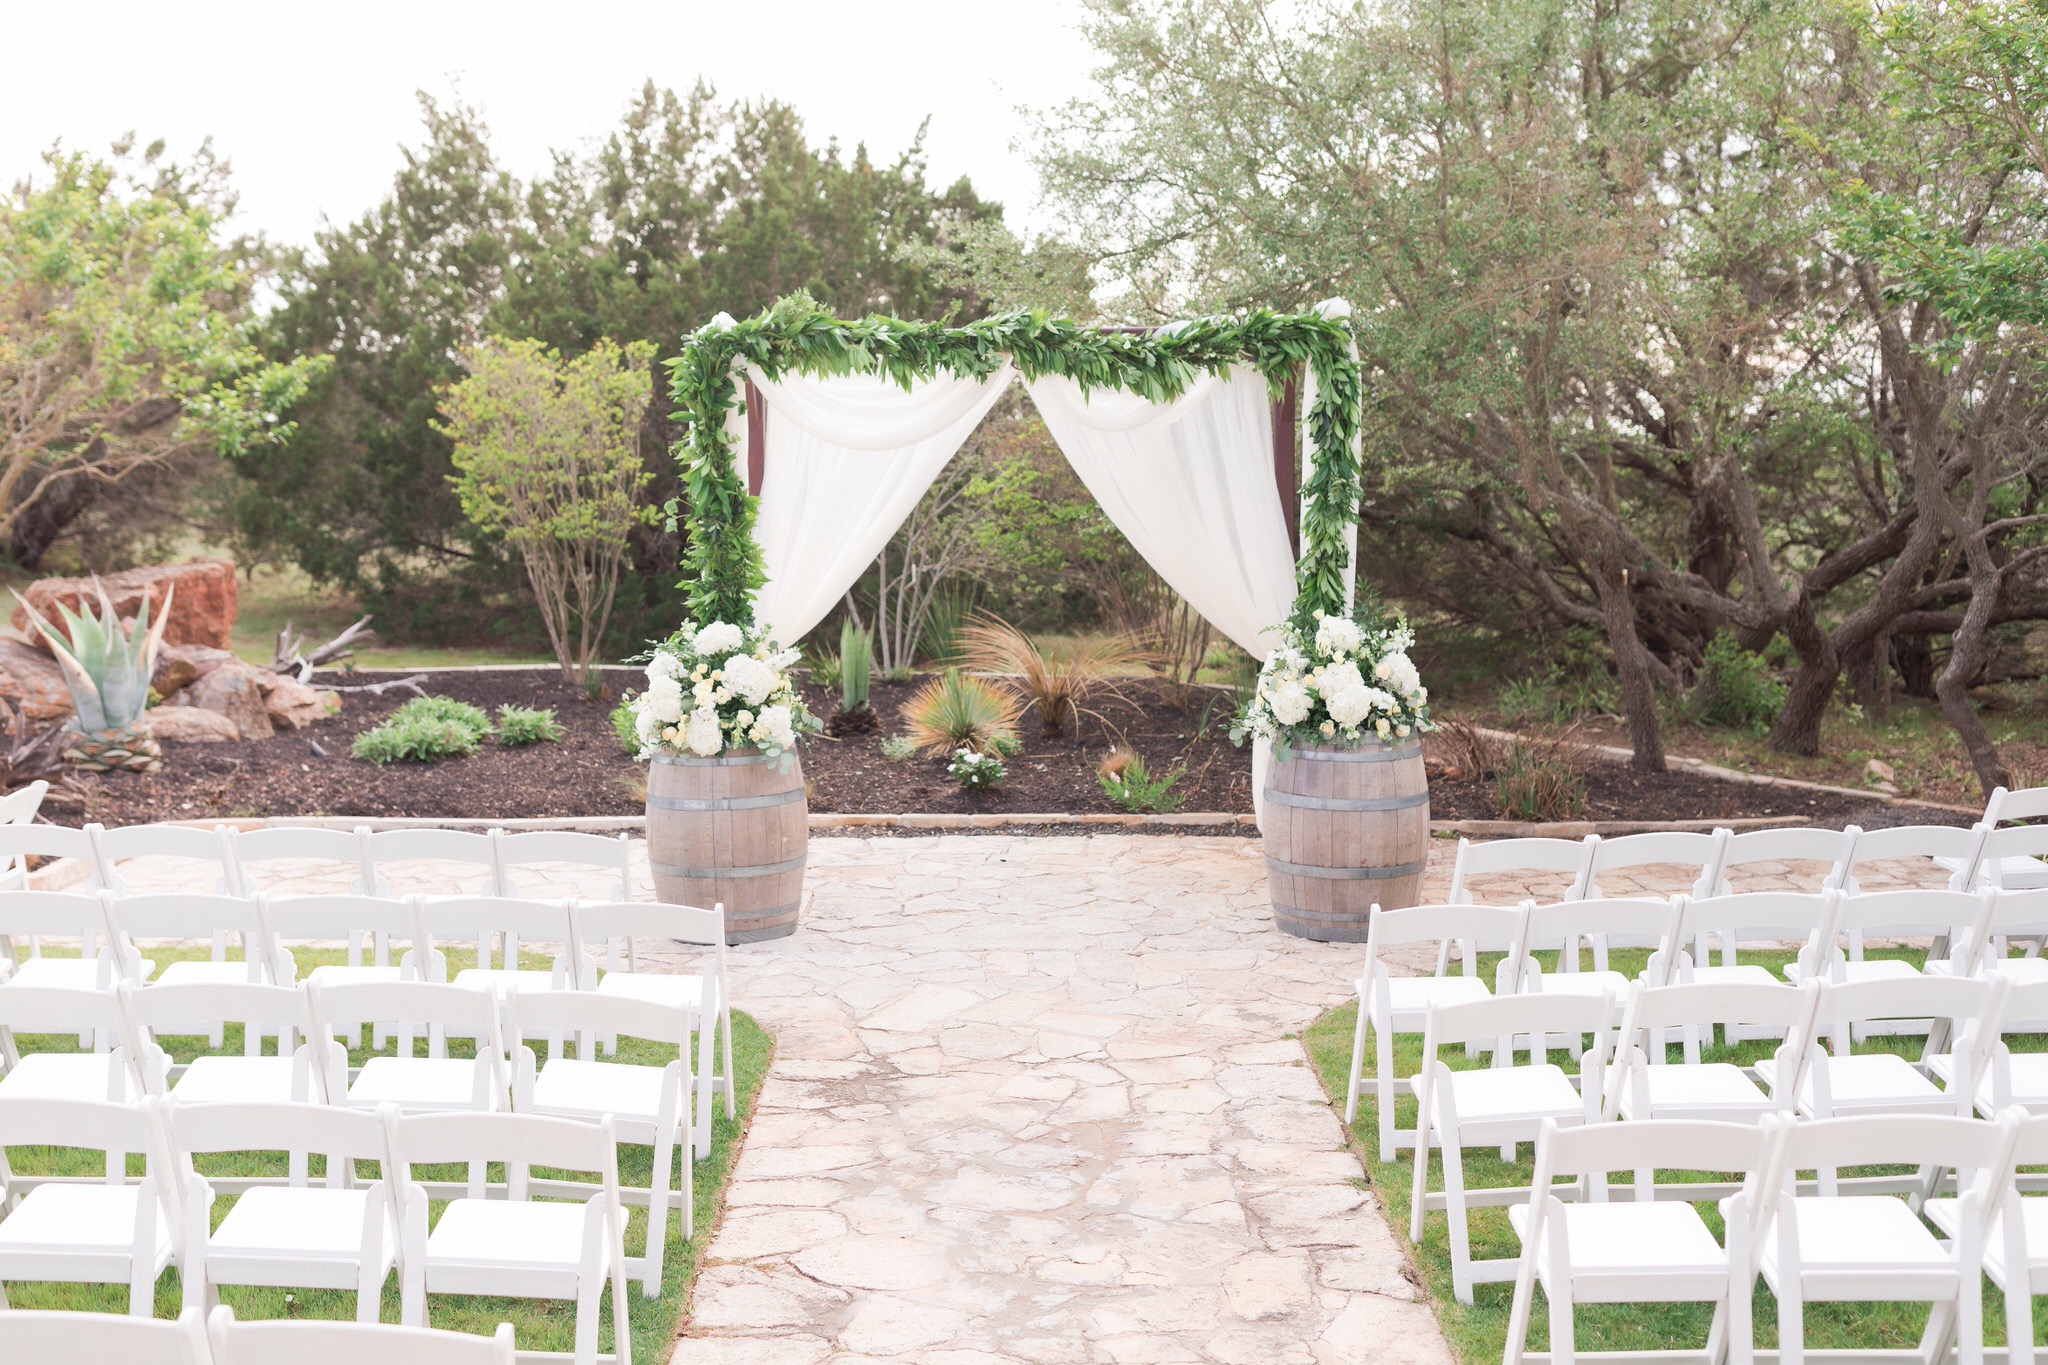 Wedding at the Terrace Club in Dripping Springs, TX by Dawn Elizabeth Studios, Texas Wedding Photographer